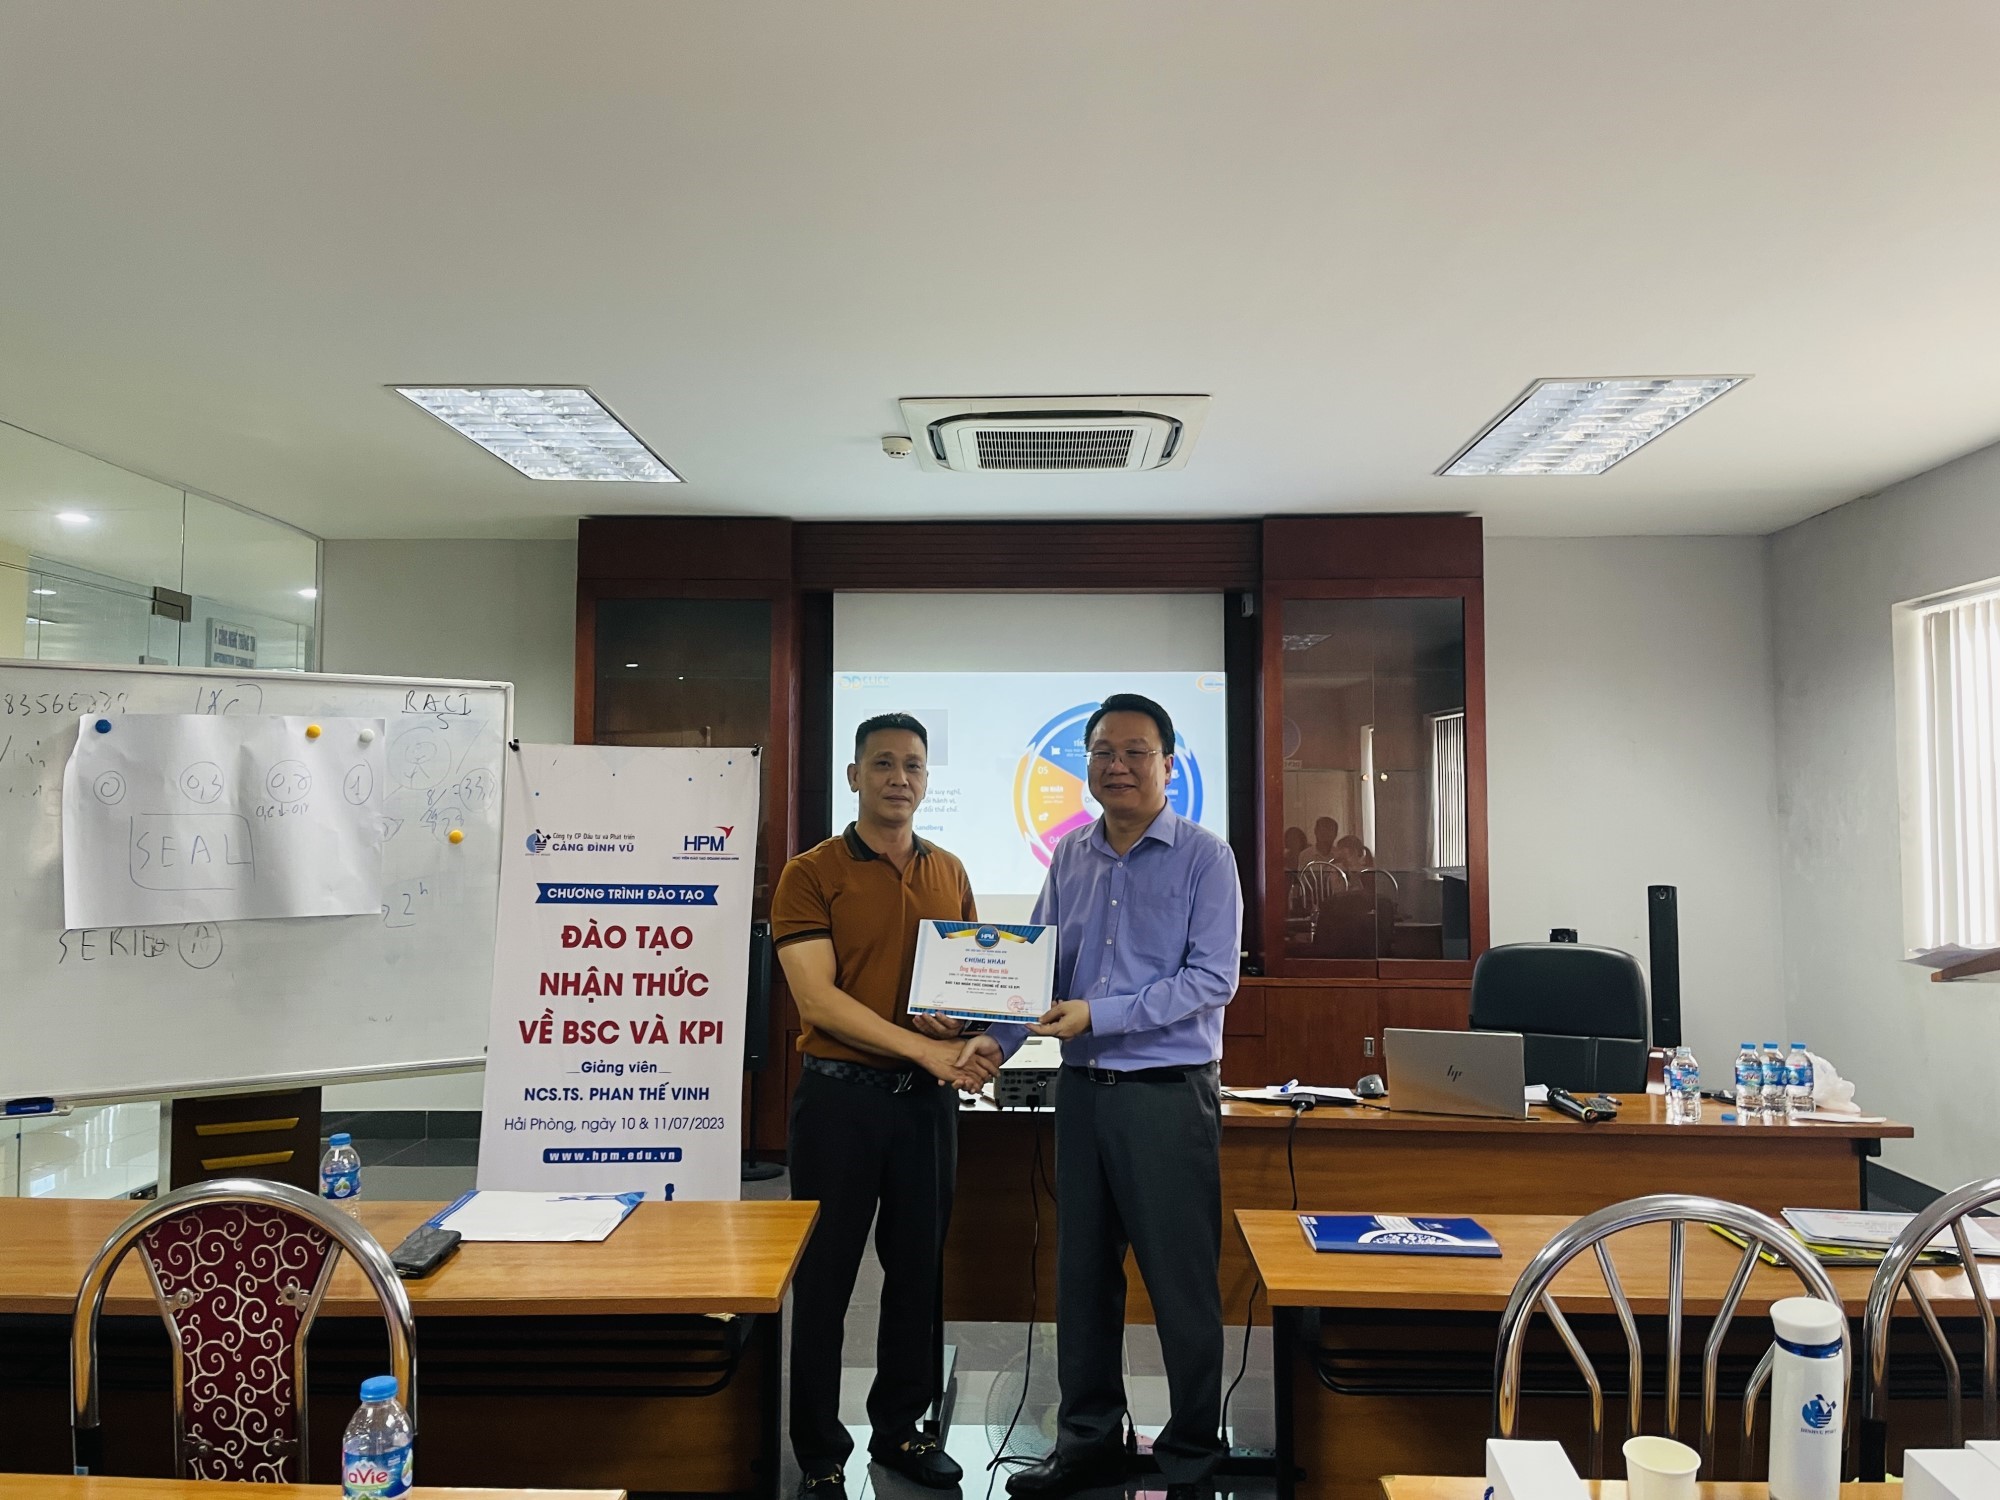 NCS-Tiến sĩ Phan Thế Vinh trao Chứng nhận hoàn thành chương trình đào tạo cho học viên